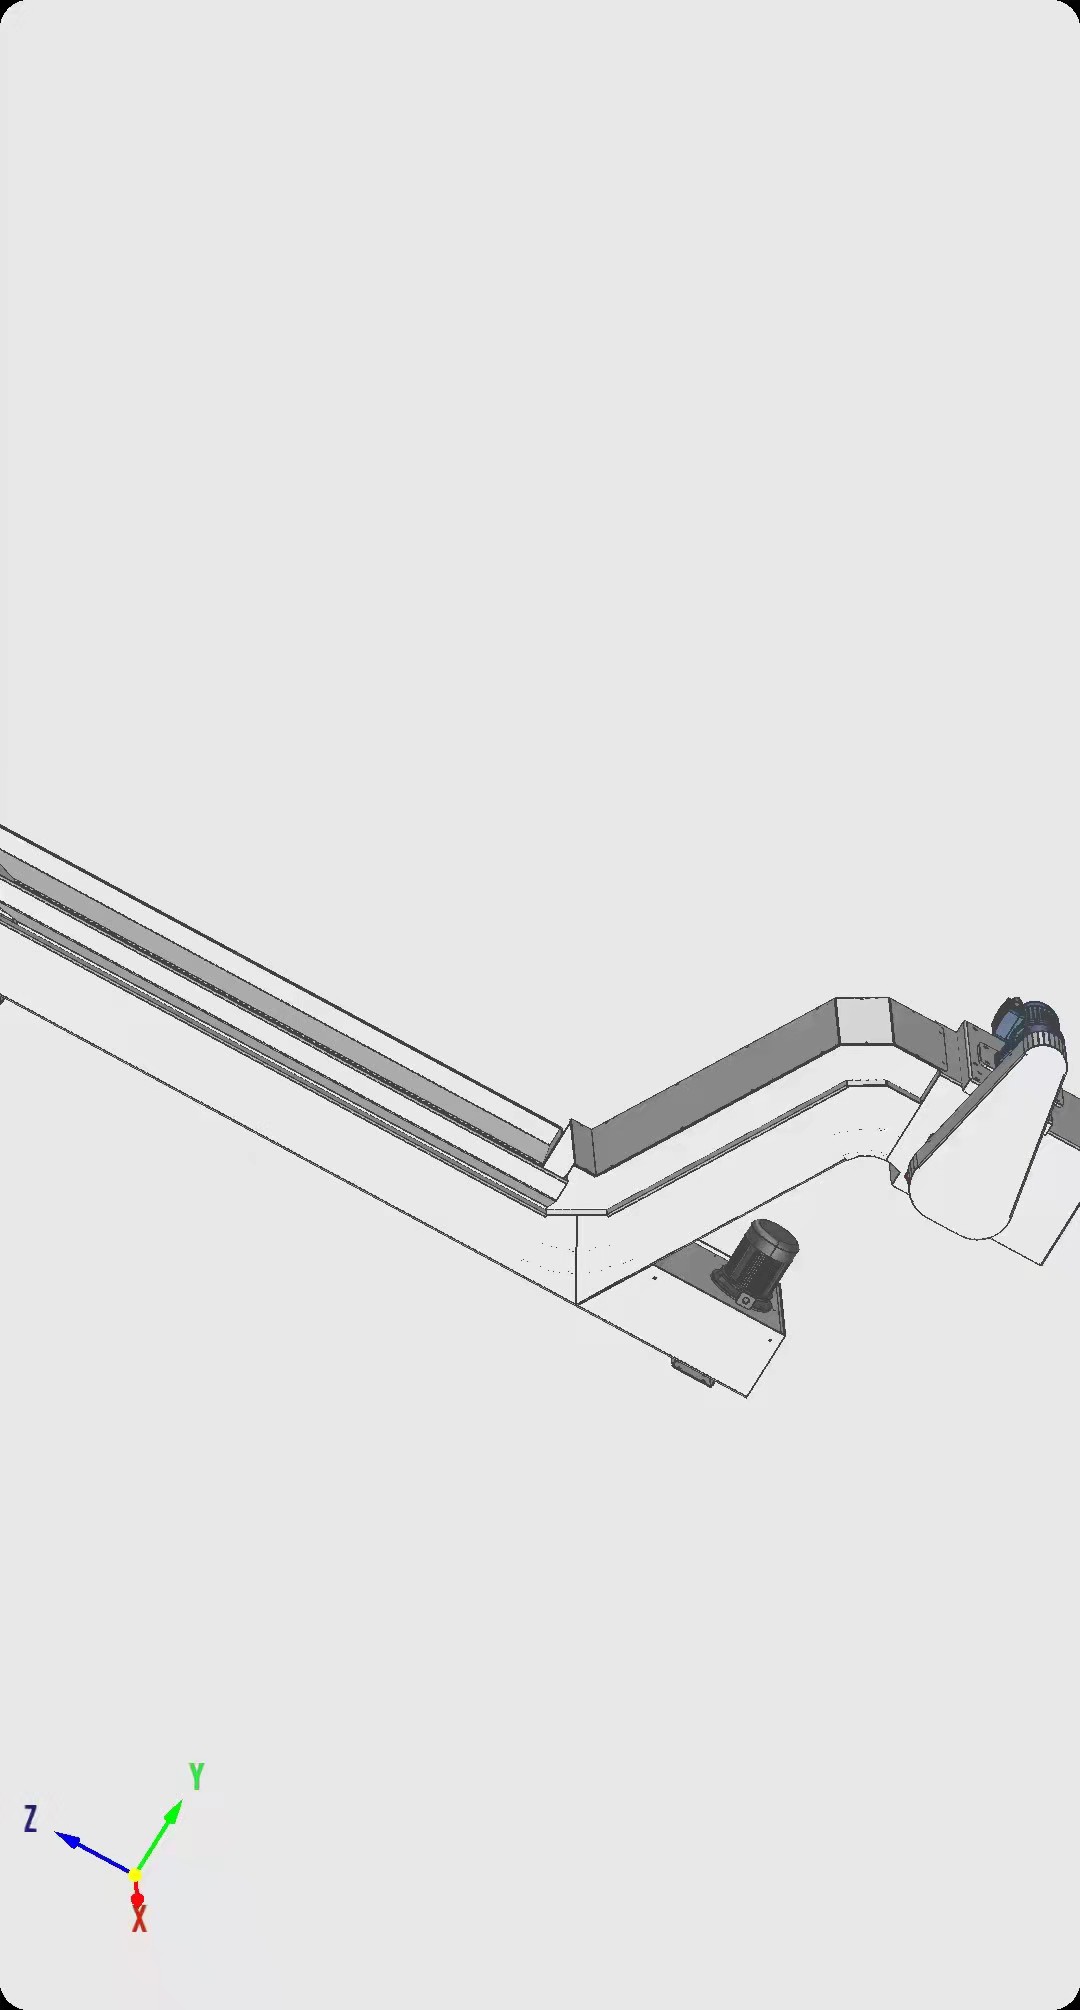 链板式排屑机 铣床废料提升输送机 机床排屑机 螺旋排屑机 排屑器无轴螺旋排屑机2